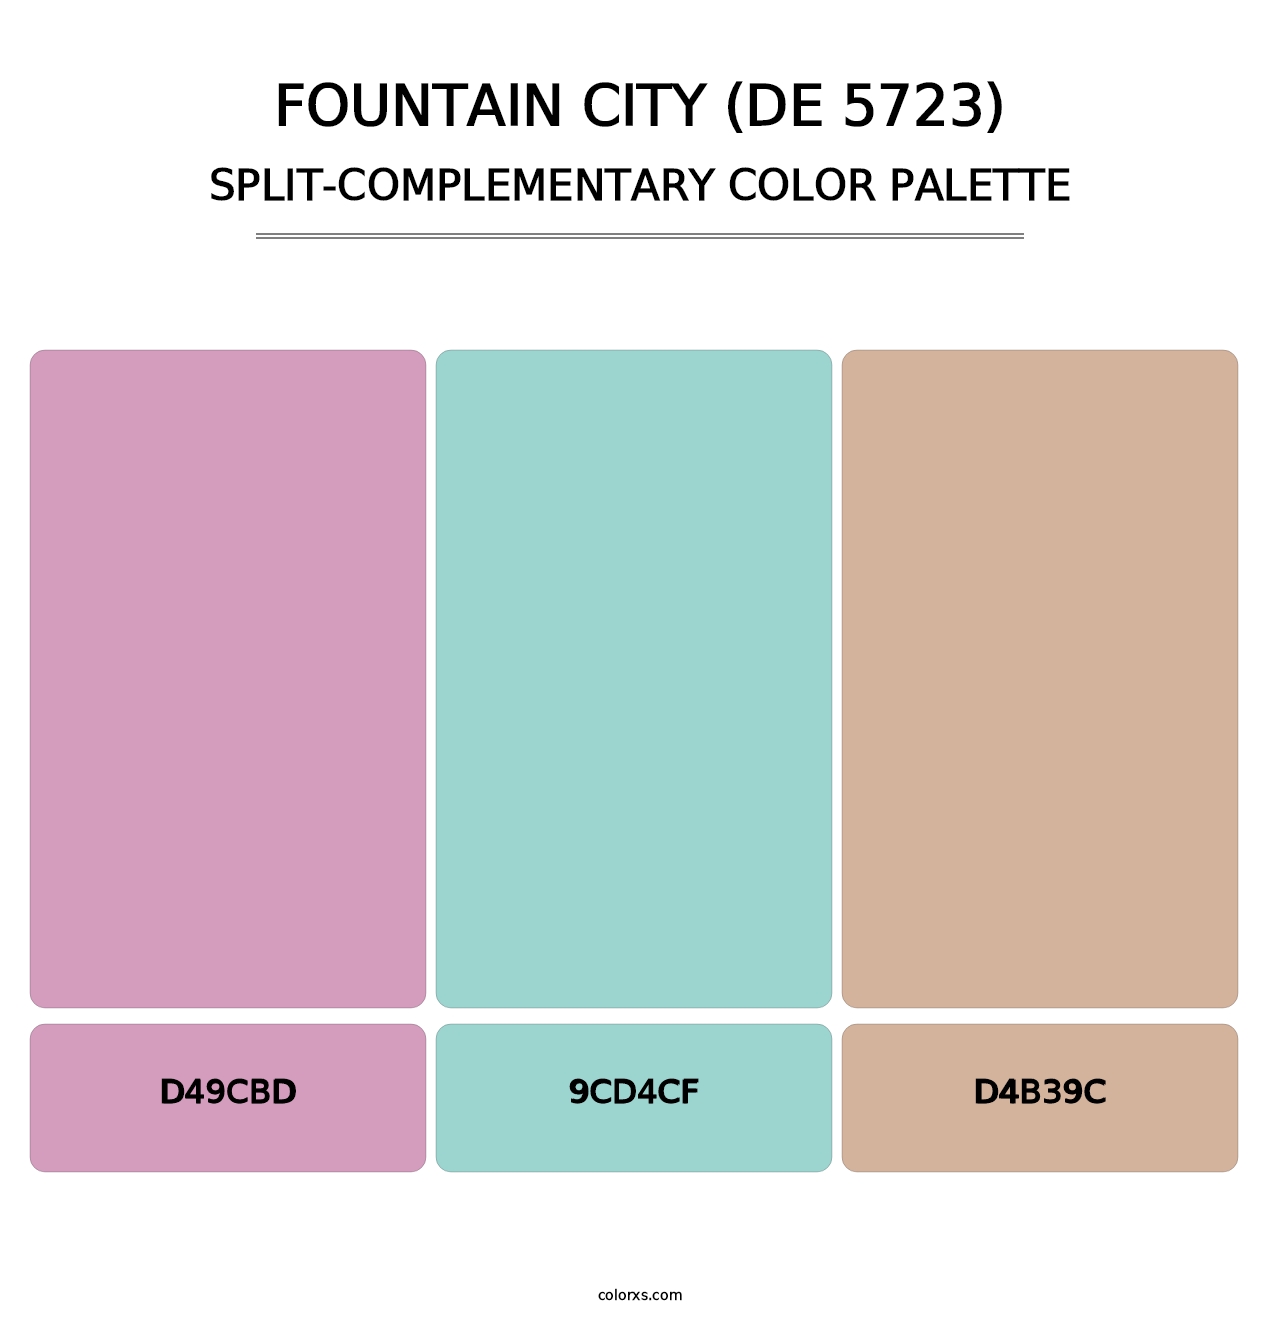 Fountain City (DE 5723) - Split-Complementary Color Palette